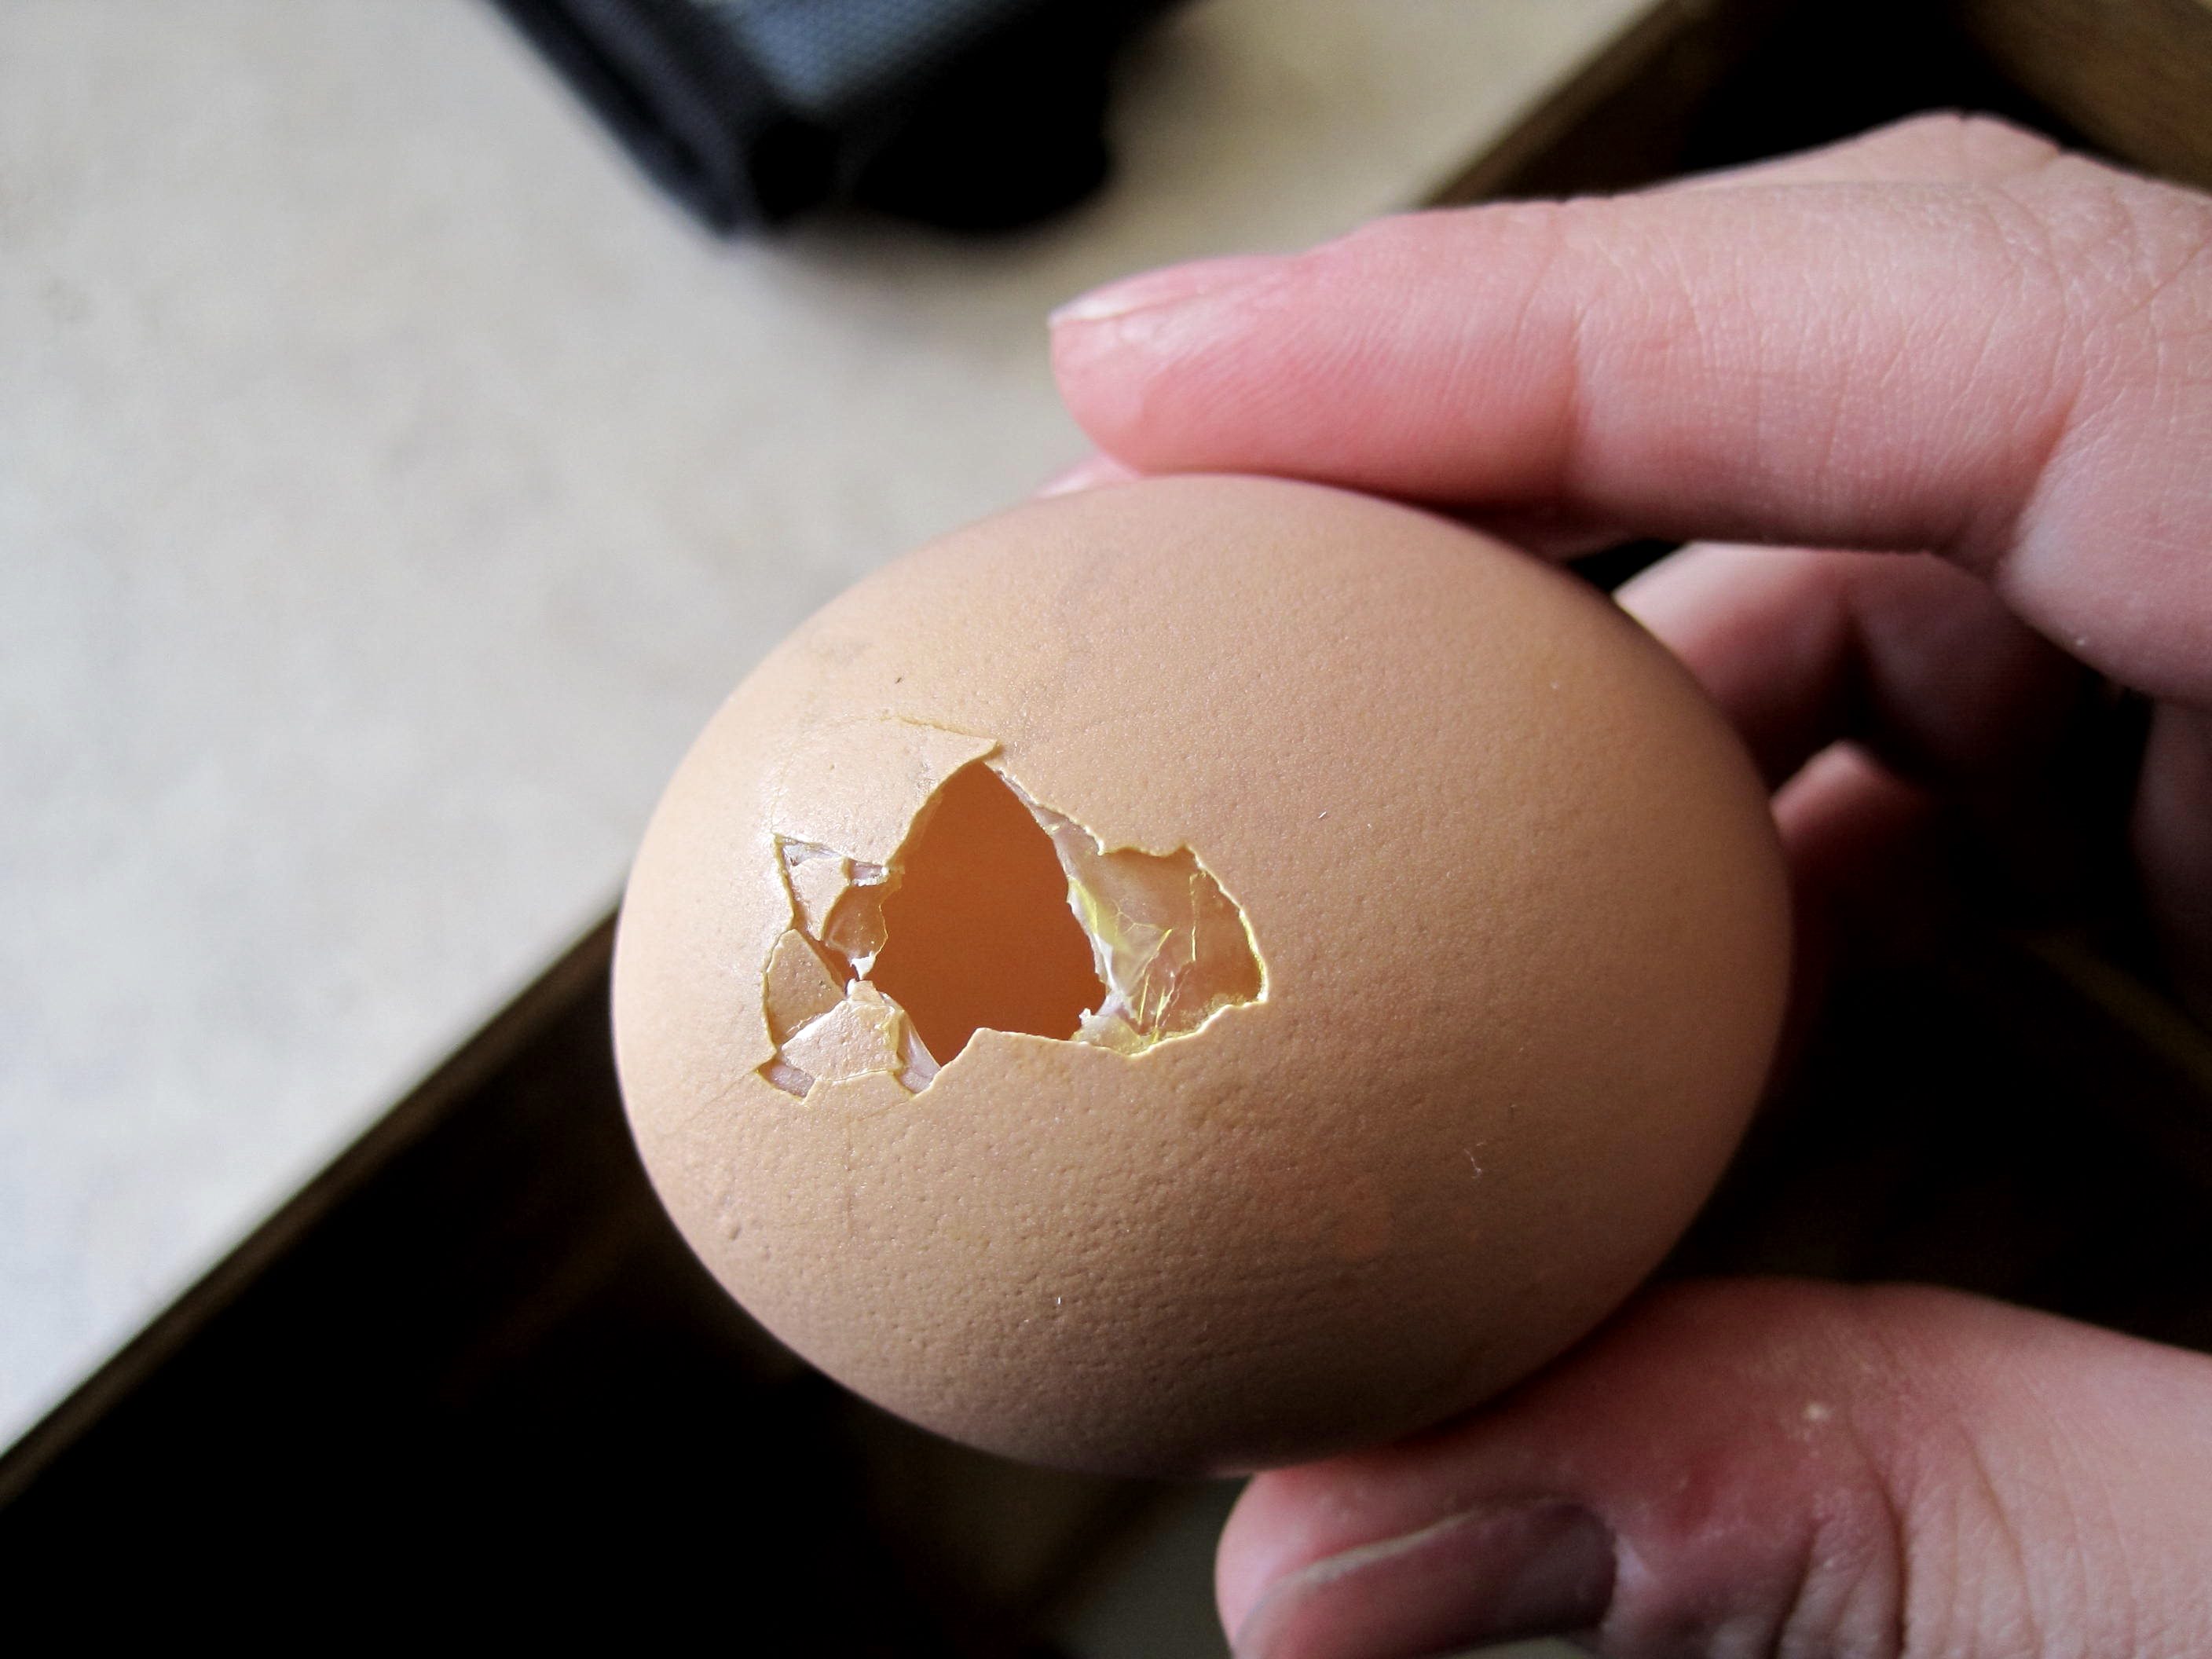 Как отучить кур клевать свои яйца?